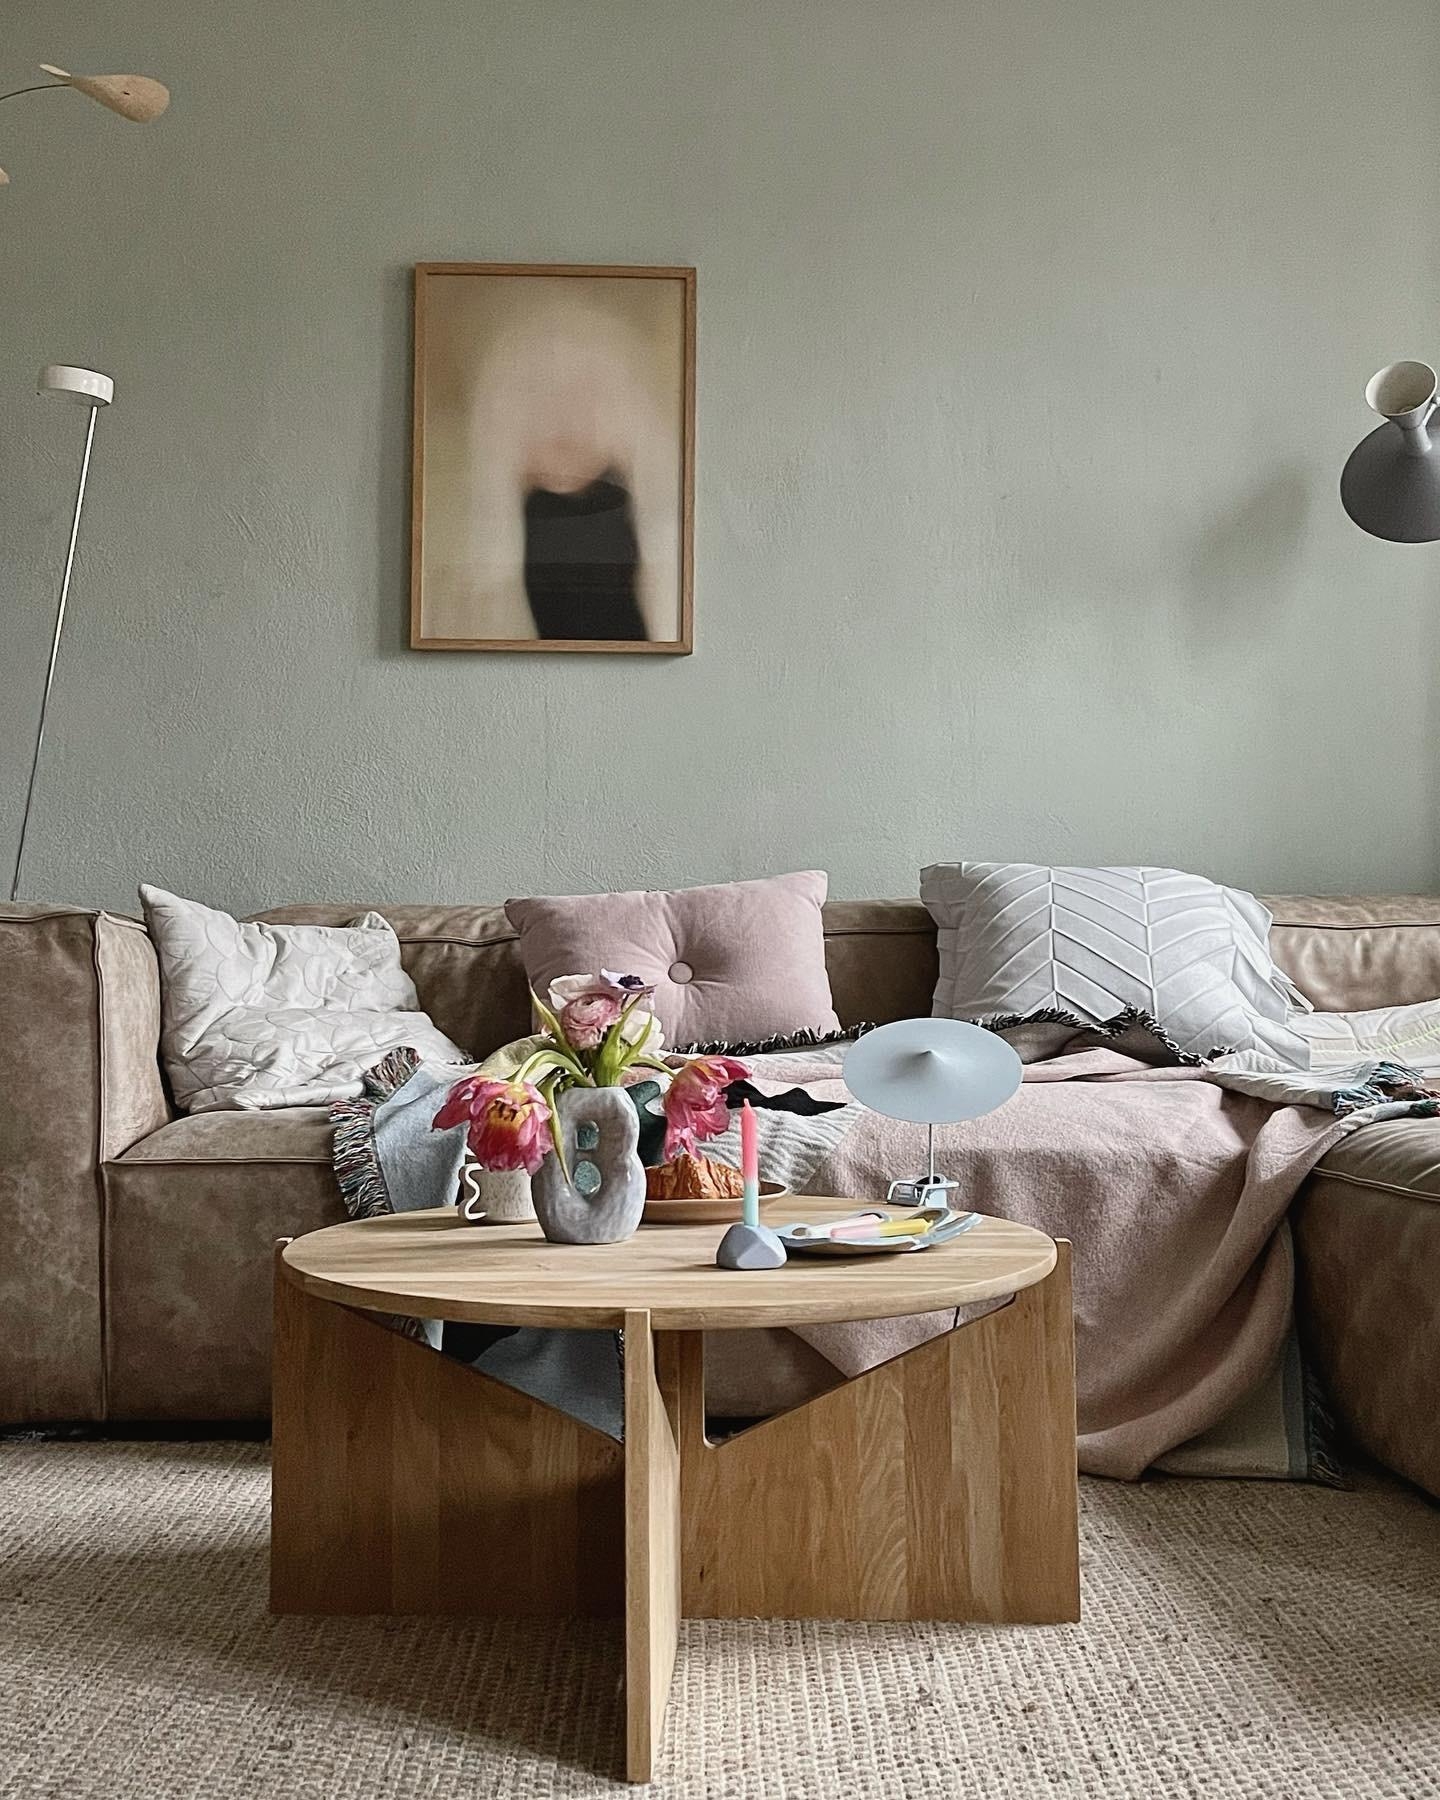 #living#home#interior#interiør#altbauliebe#wohnen#scsndinavisch#couchstyle#wohnzimmer#lampe#cozy#deko#home